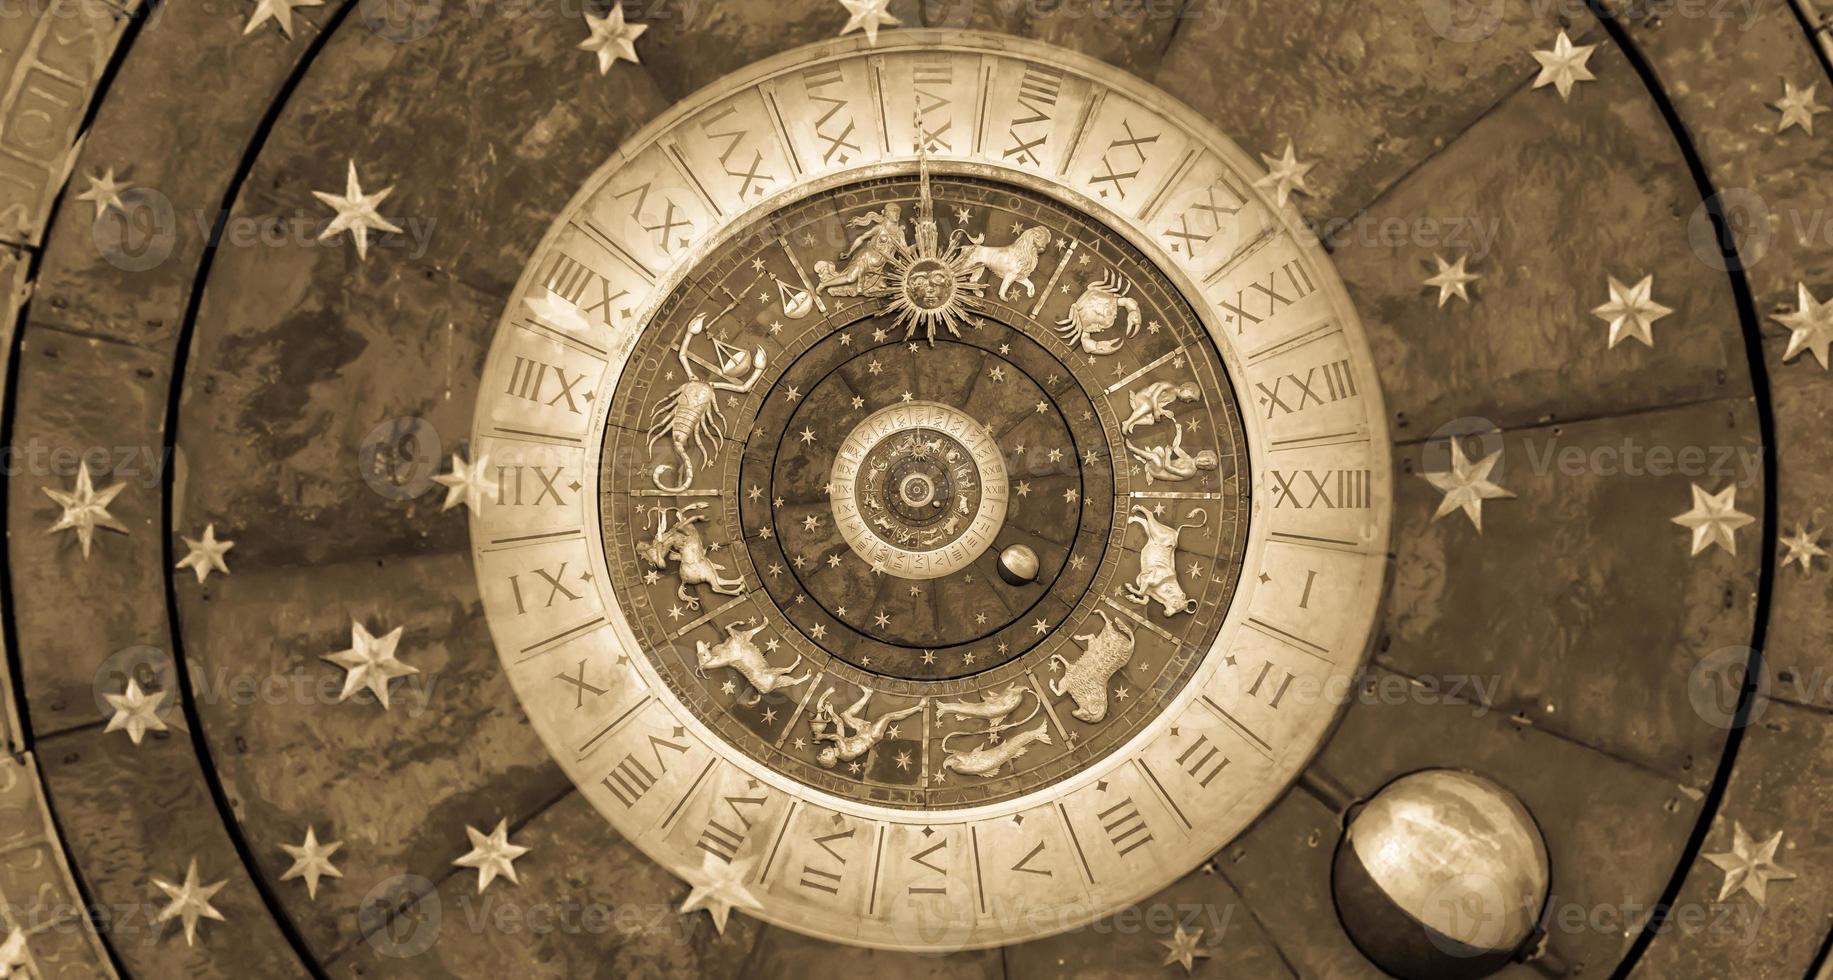 arrière-plan astrologique avec signes et symboles du zodiaque. photo